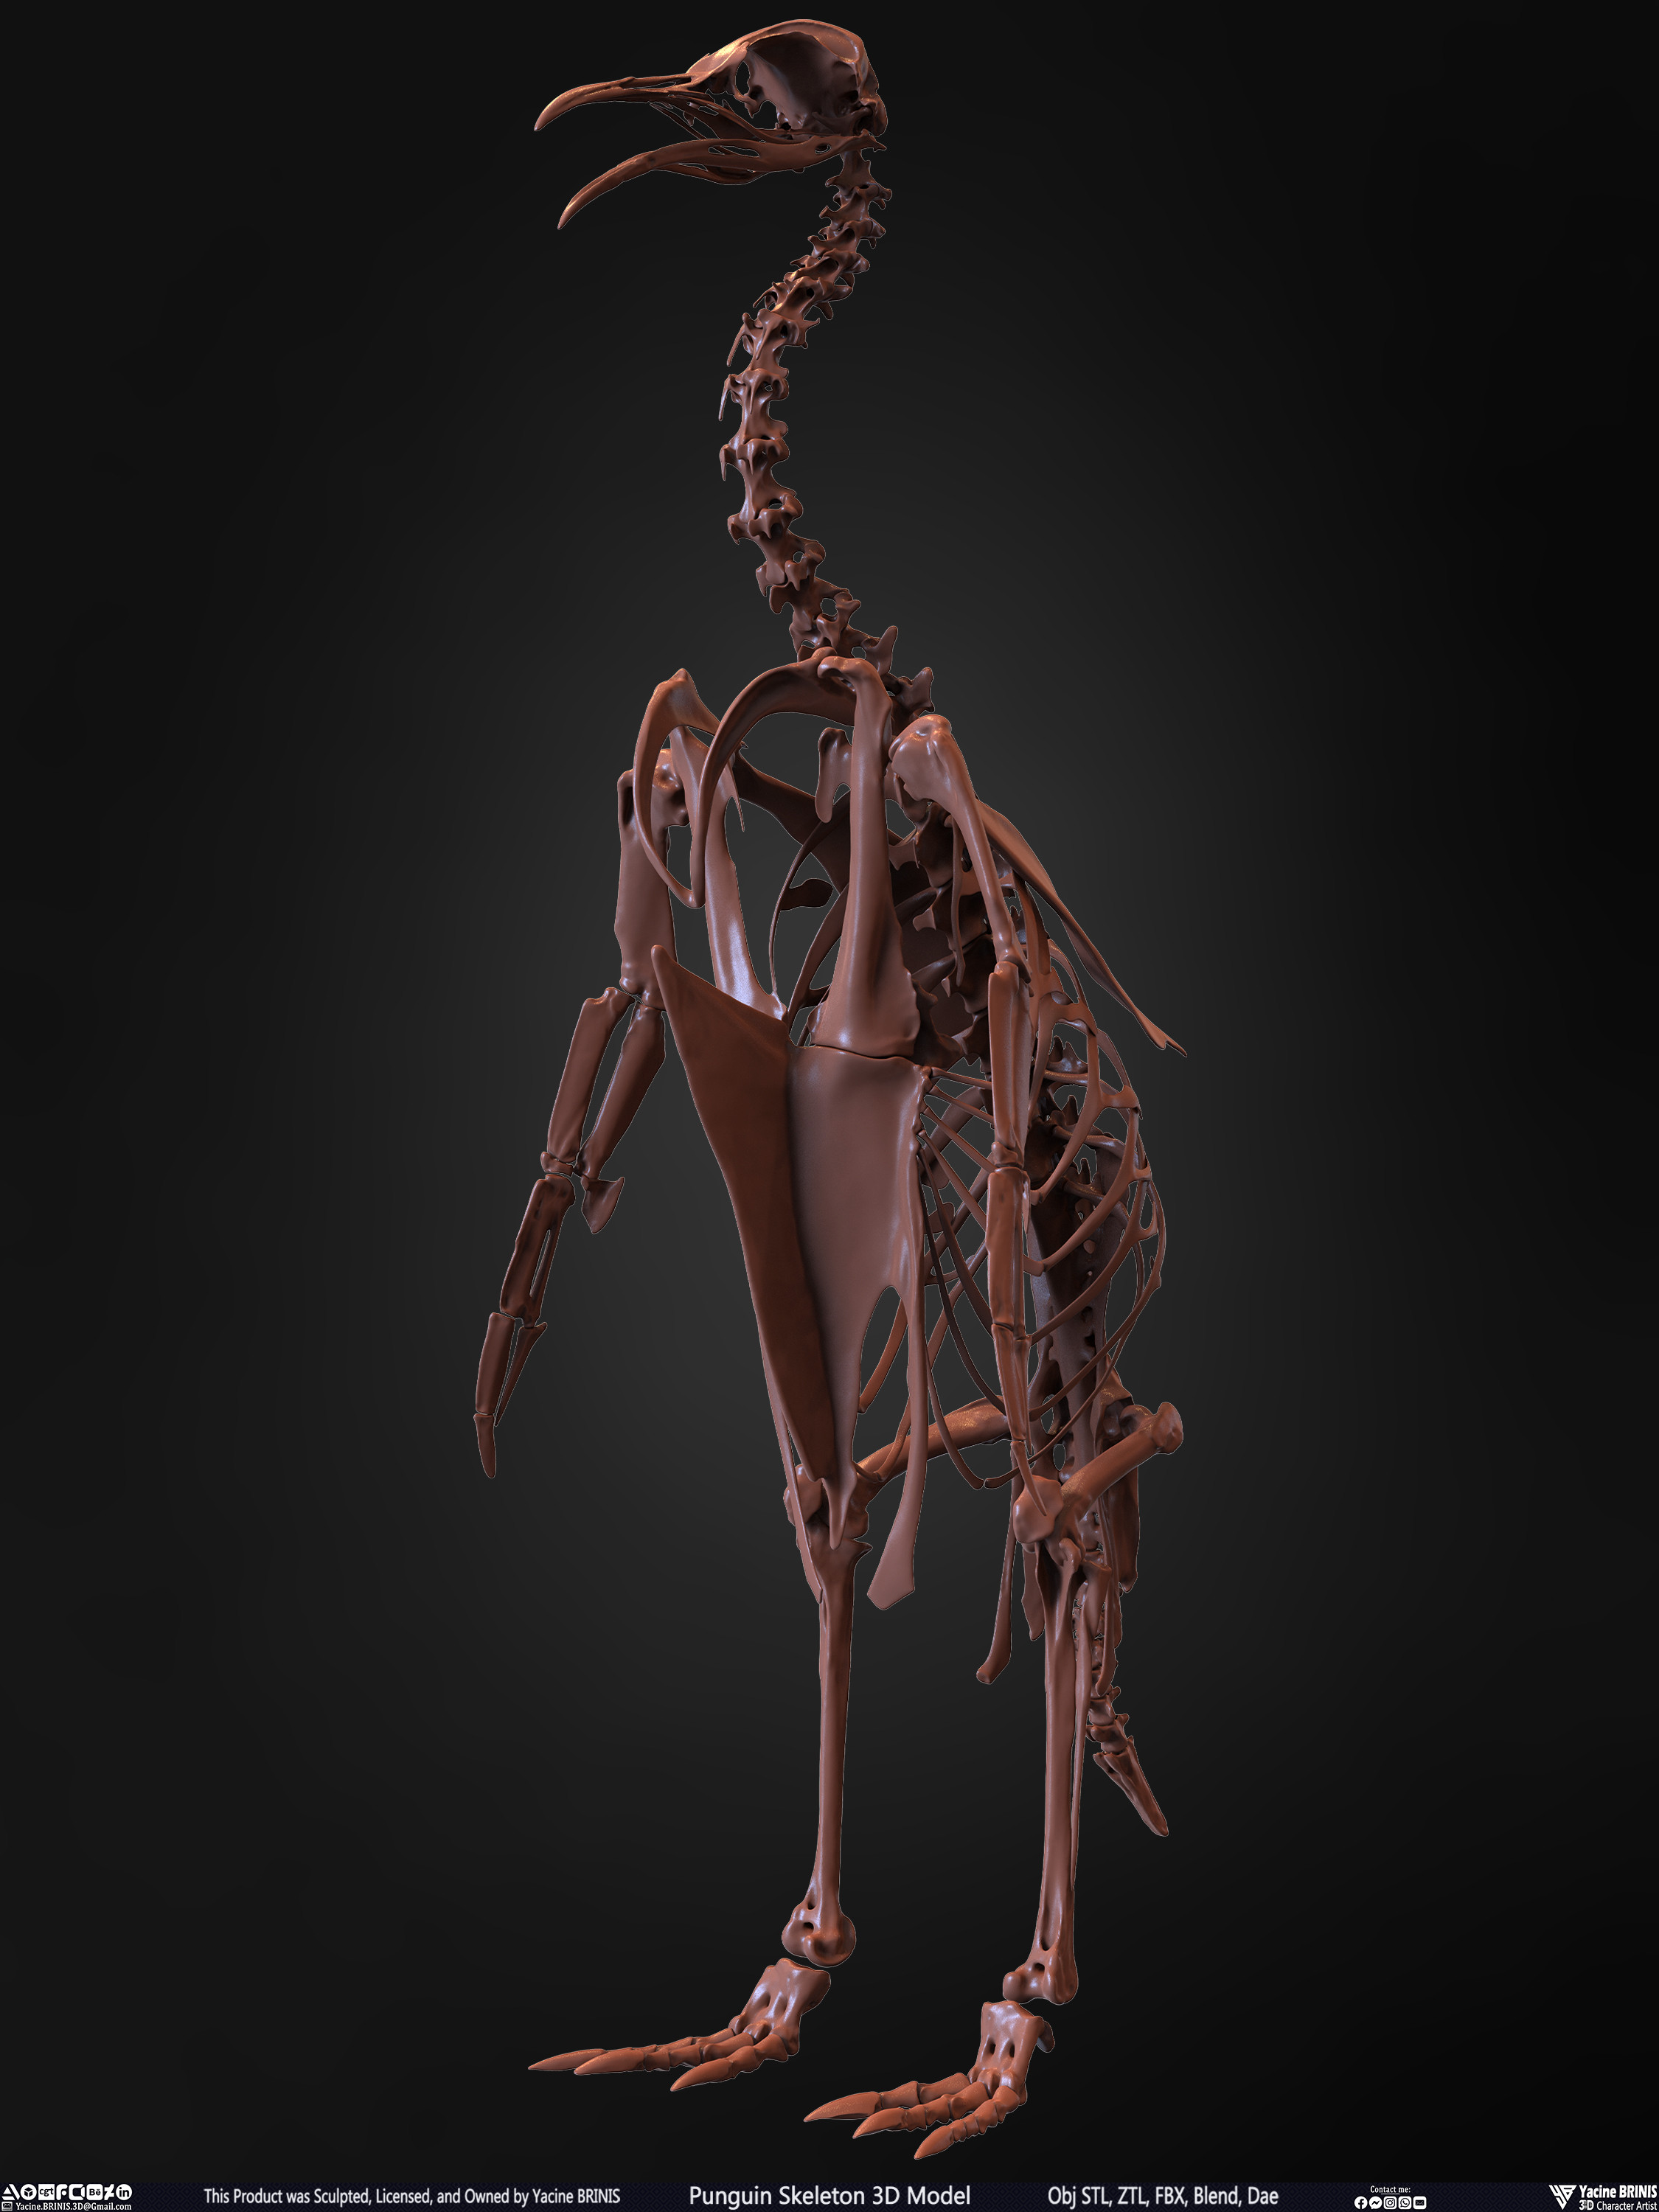 Penguin Skeleton 3D Model Sculpted by Yacine BRINIS Set 008